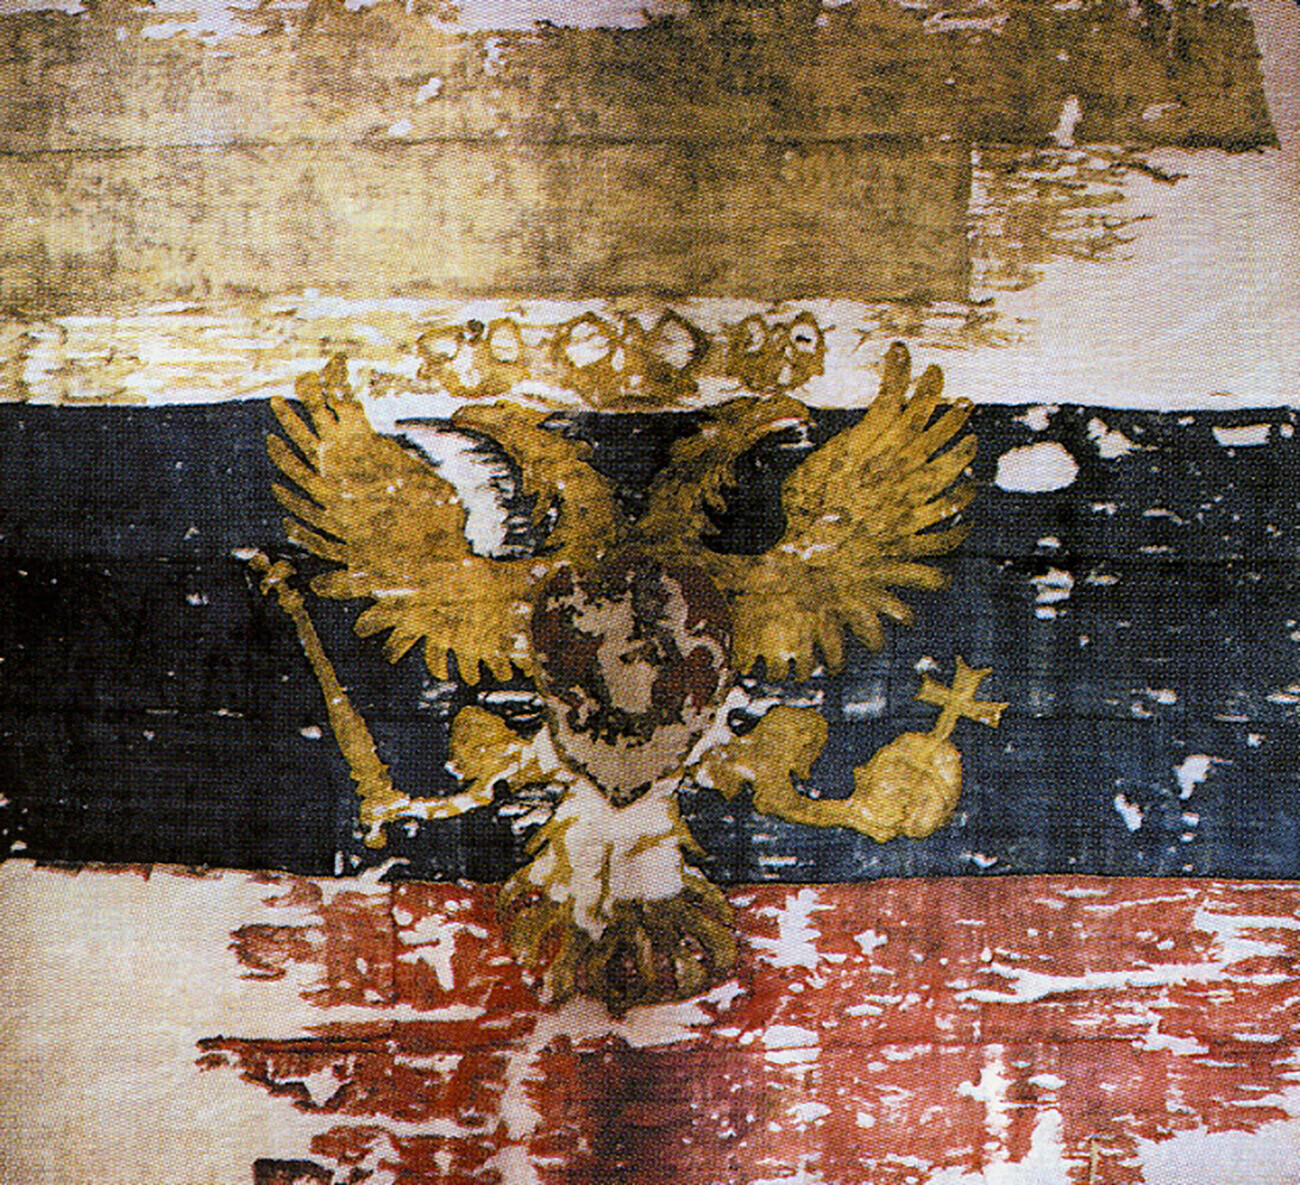 Bandeira da Rússia – Wikipédia, a enciclopédia livre